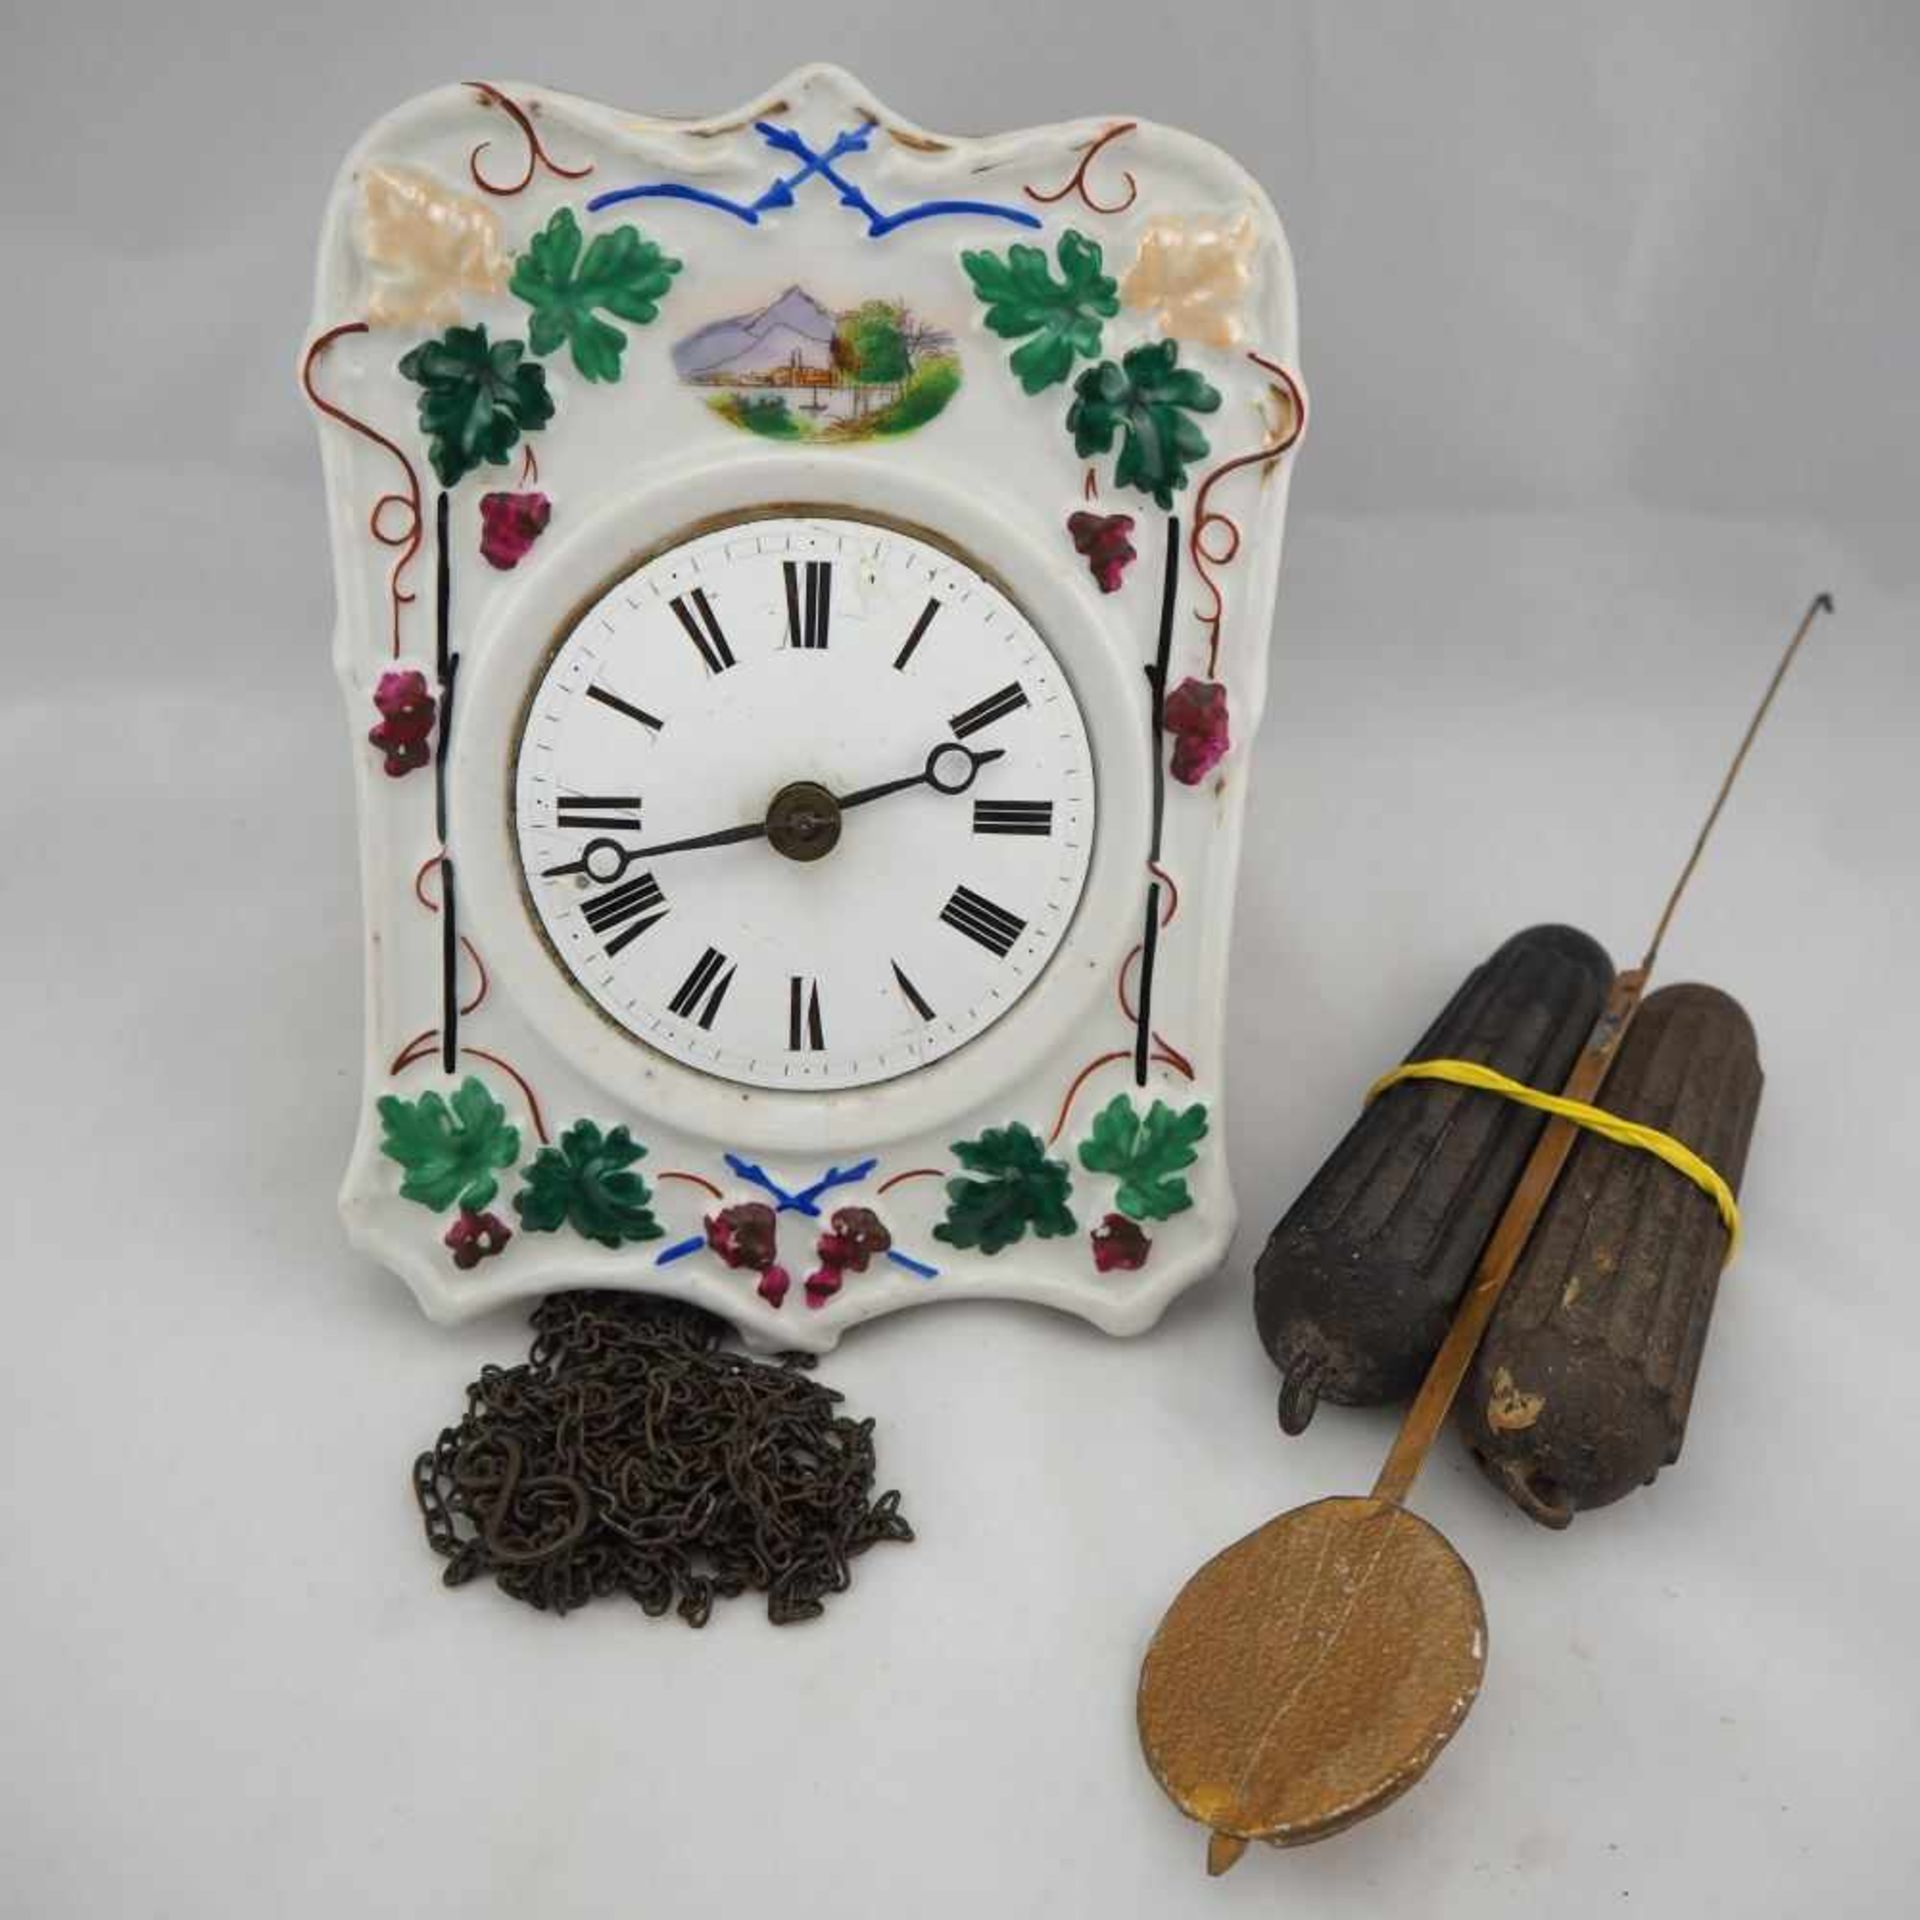 Porzellanschild Uhr, um 1900Bauernuhr mit Porzellanschild (intakt). Emaille Zifferblatt,